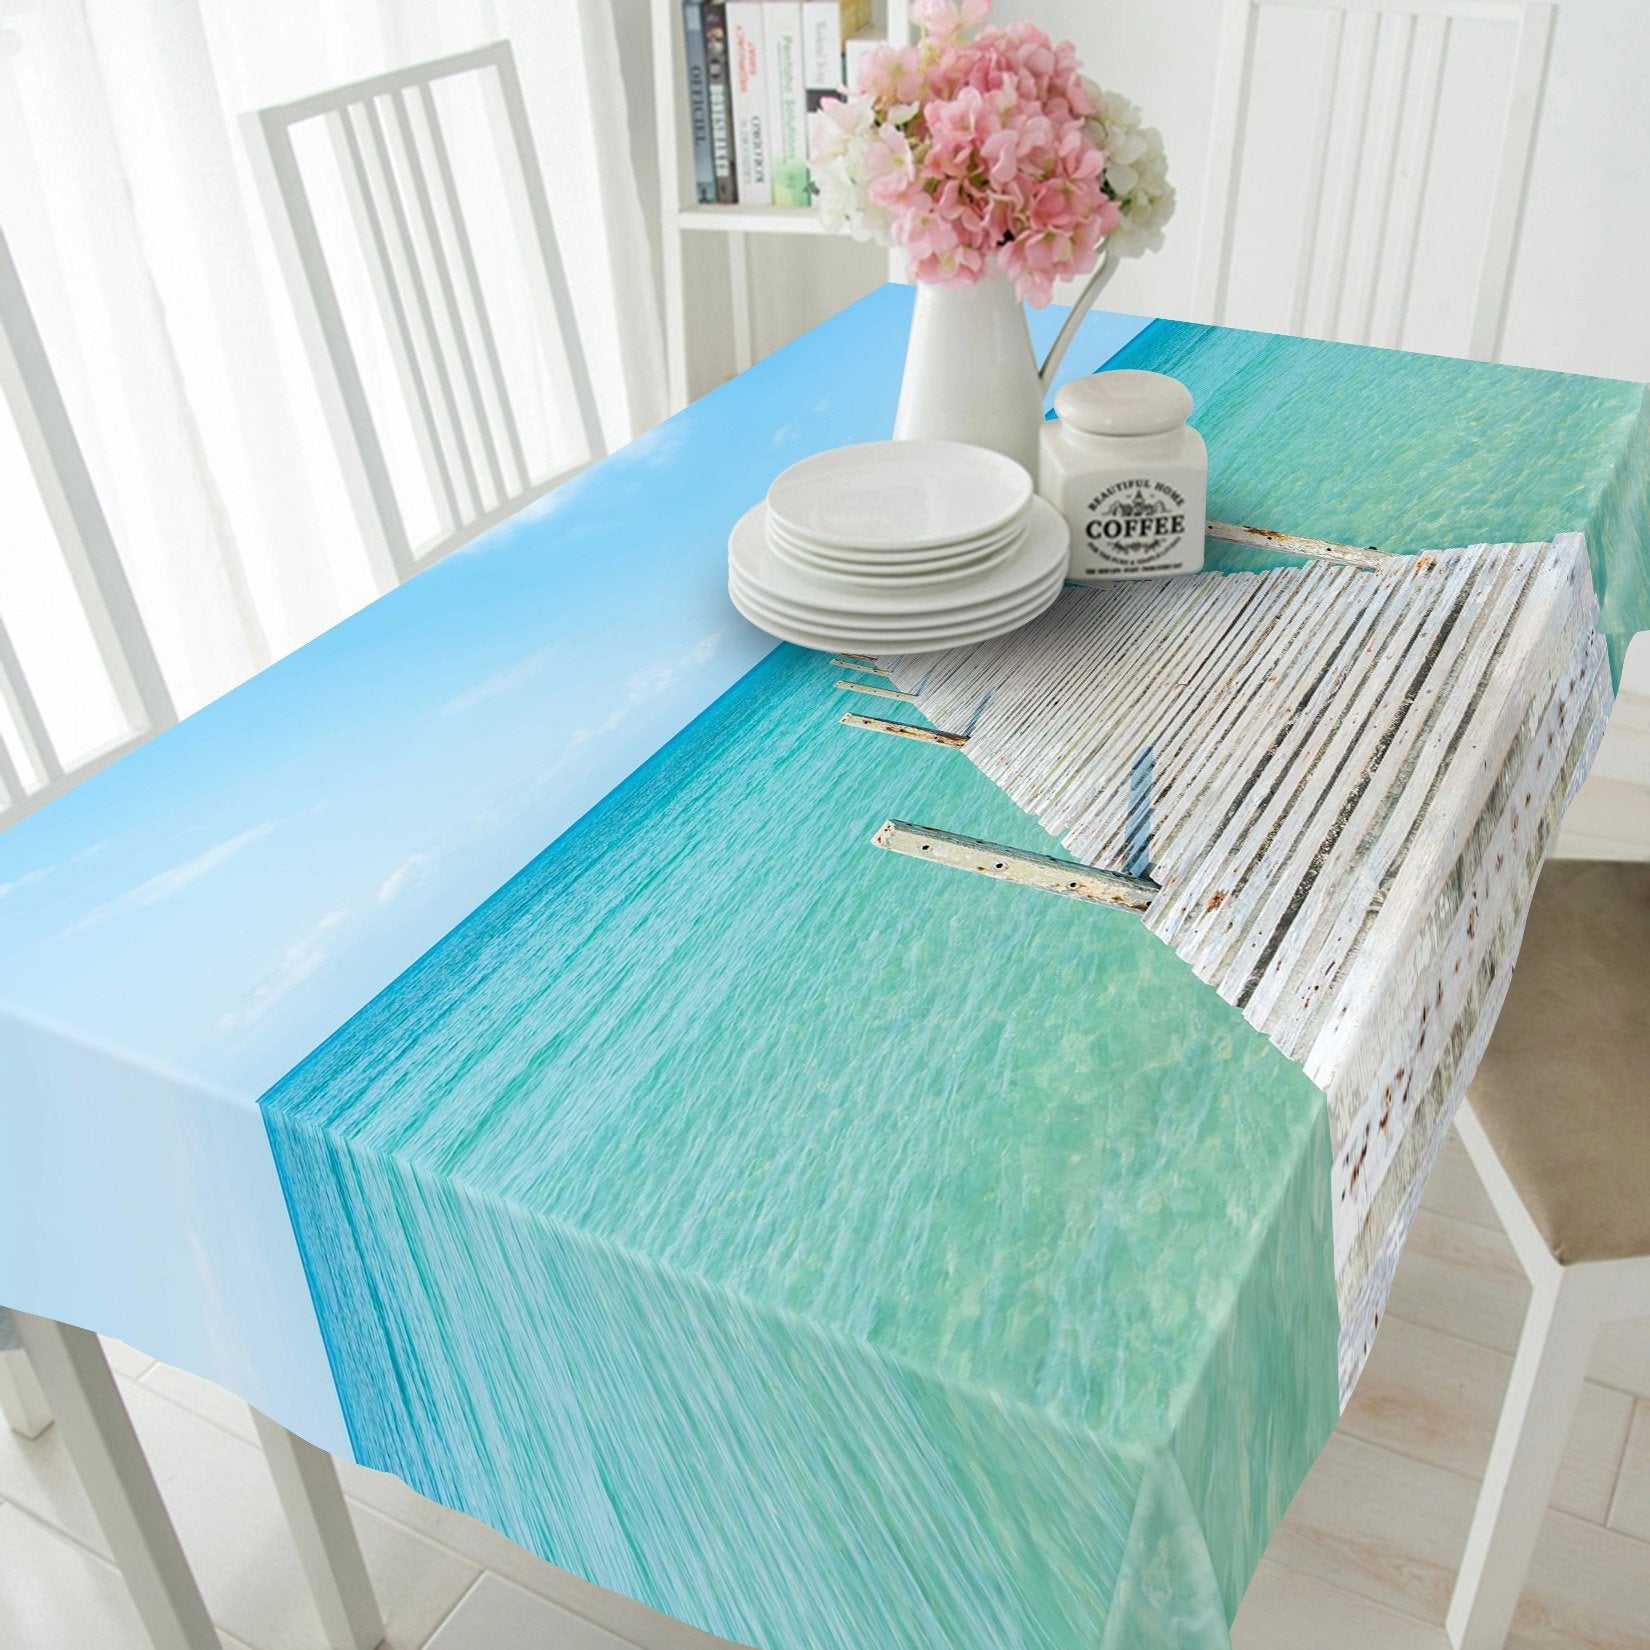 3D Sea Wood Corridor 632 Tablecloths Wallpaper AJ Wallpaper 